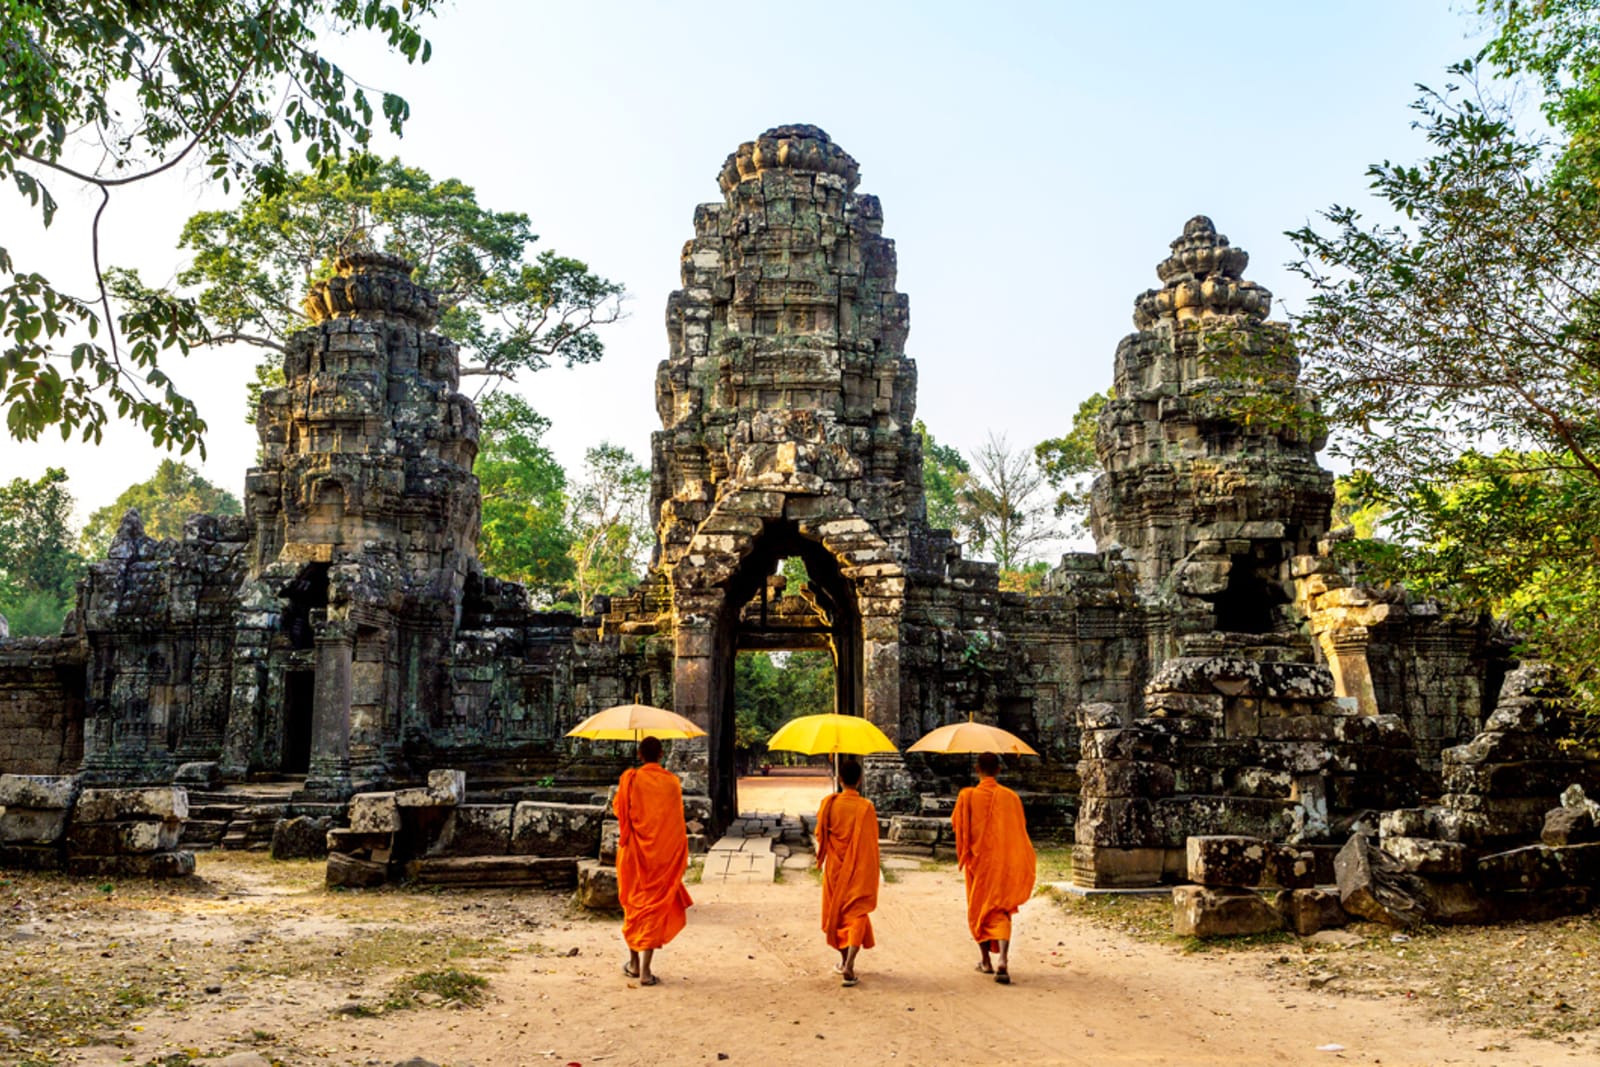 Monks walking toward an ancient structure at Angkor Wat